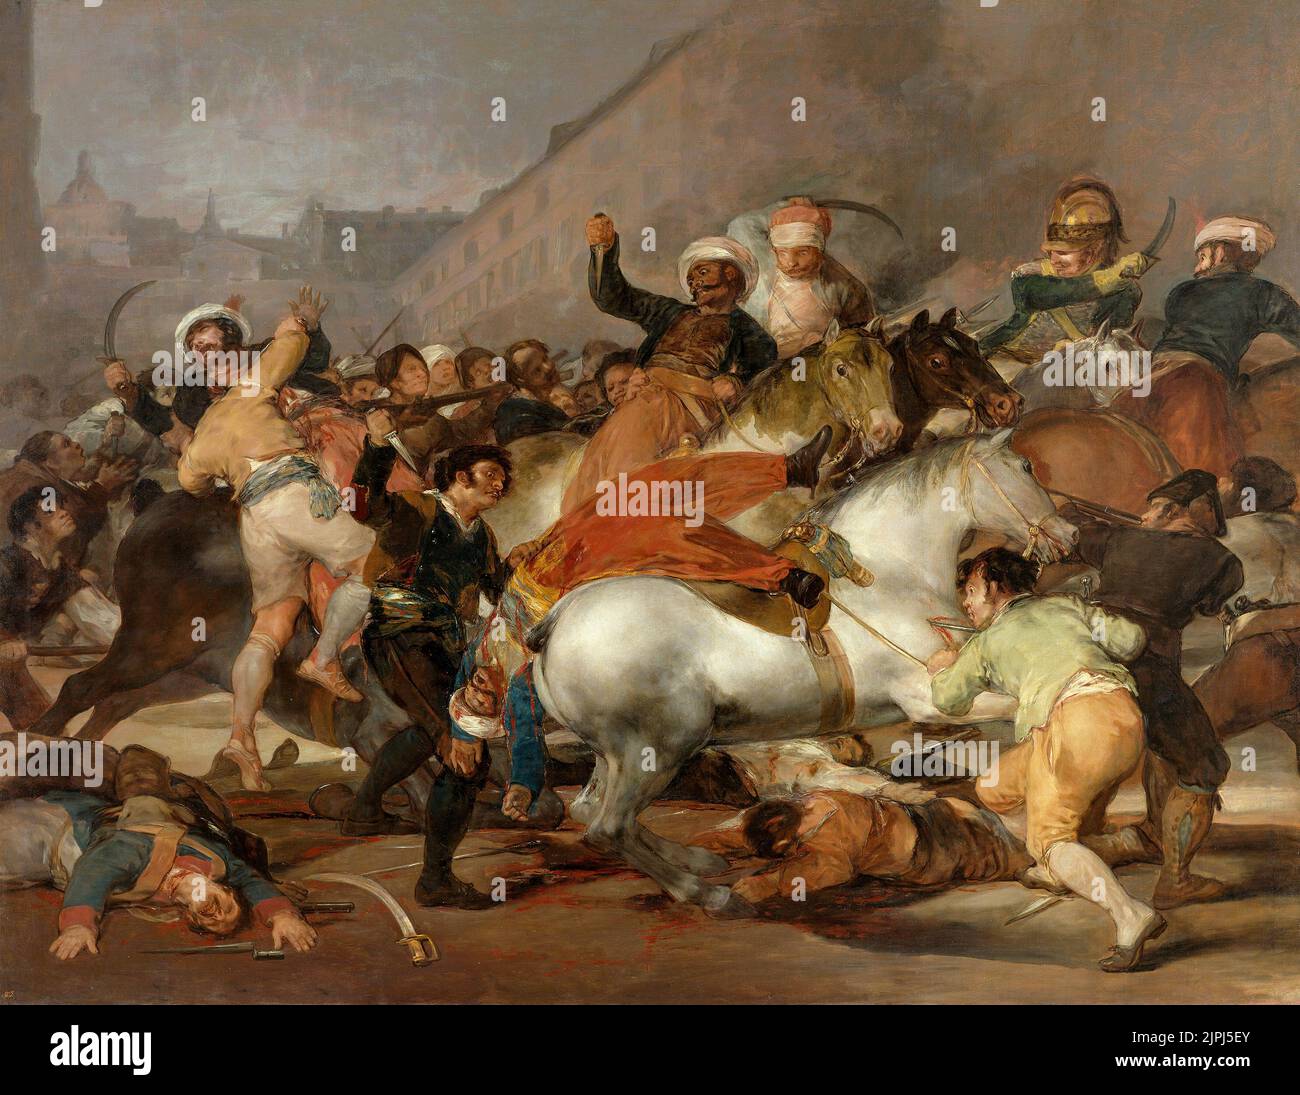 El segundo de mayo de 1808: El cargo de los mamelucos, de Francisco de Goya Foto de stock